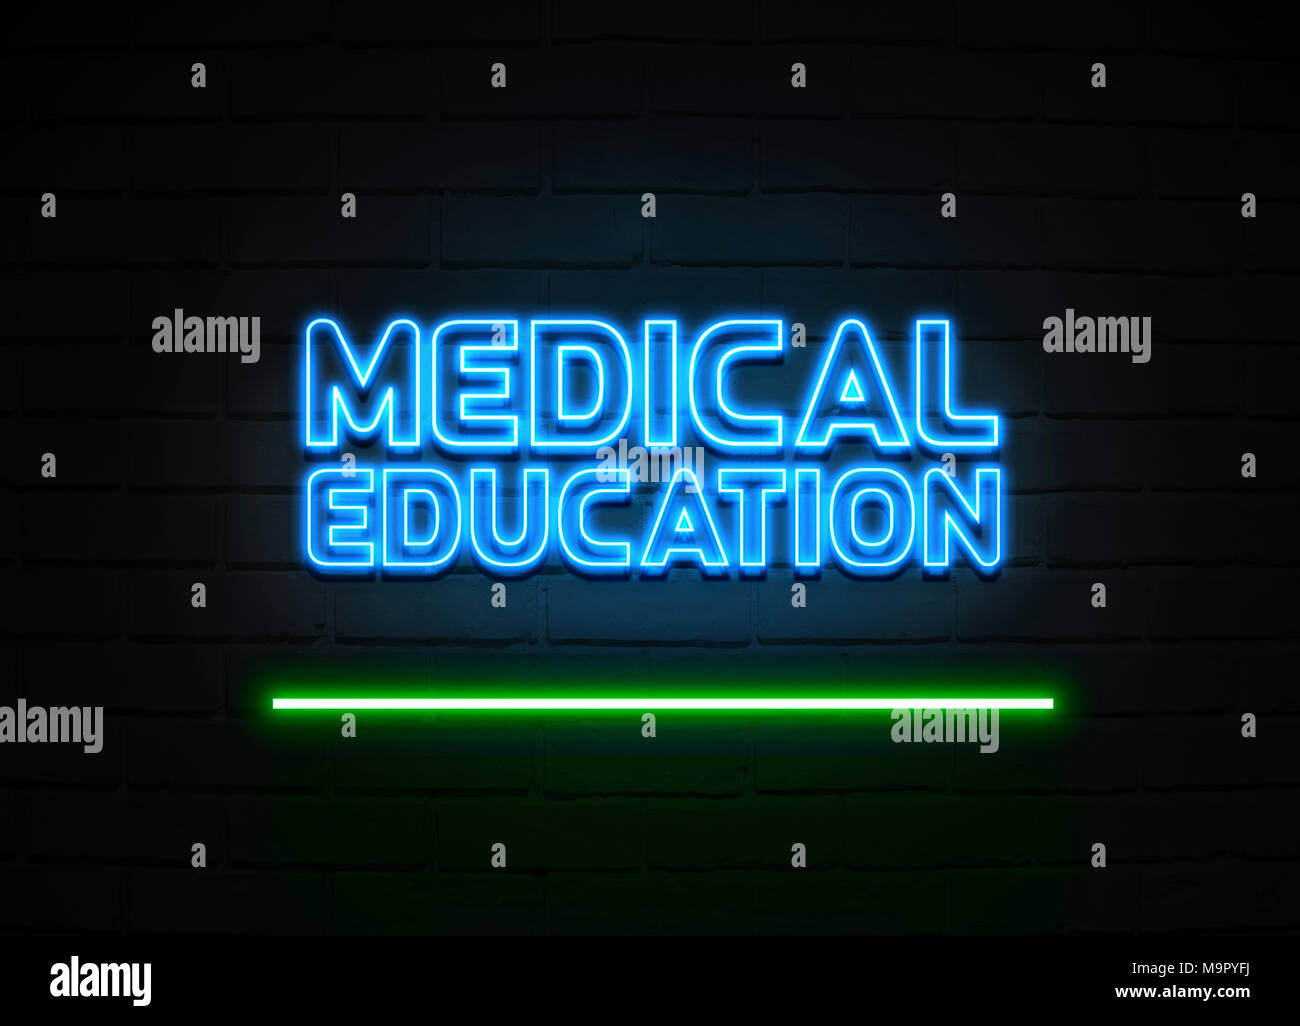 Medizinische Ausbildung Leuchtreklame - glühende Leuchtreklame auf brickwall Wand - 3D-Royalty Free Stock Illustration dargestellt. Stockfoto